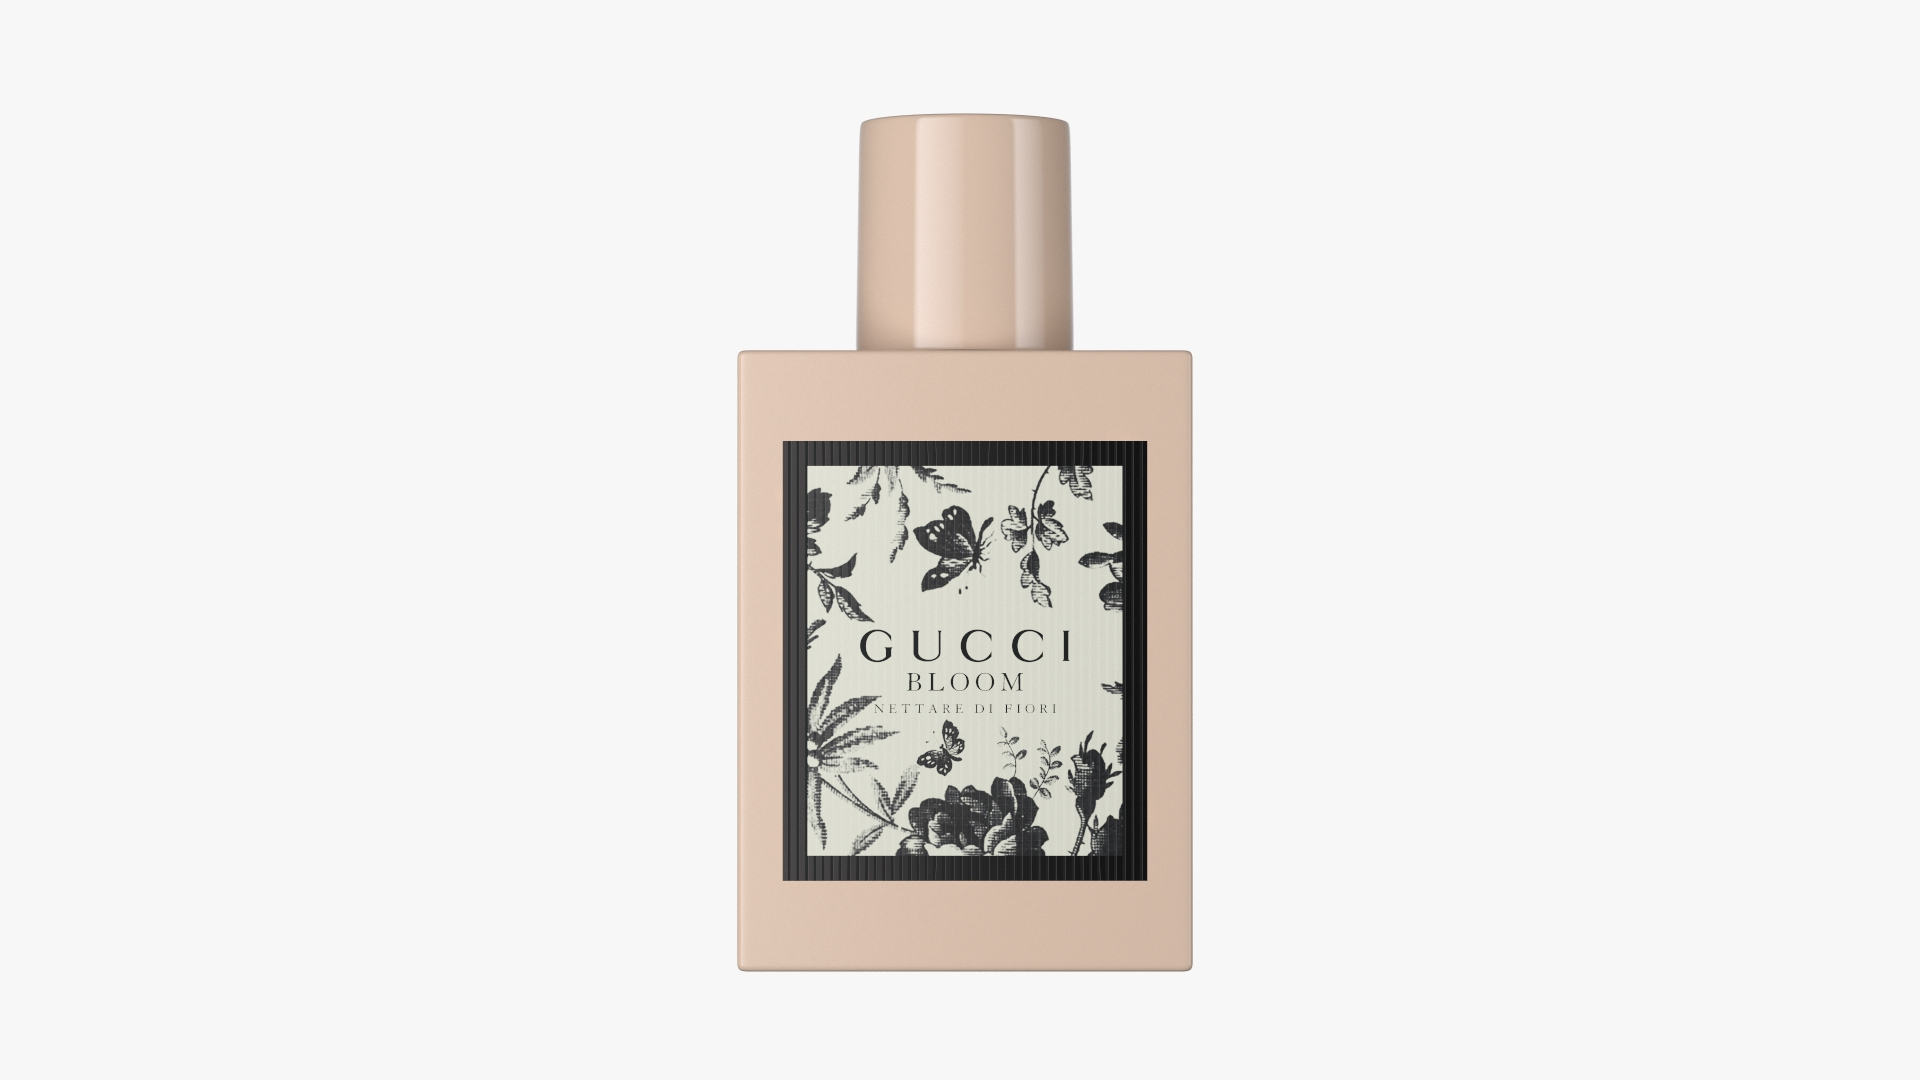 Gucci Bloom Nettare Di Fiori Perfume Bottle 3D model - TurboSquid 1744051